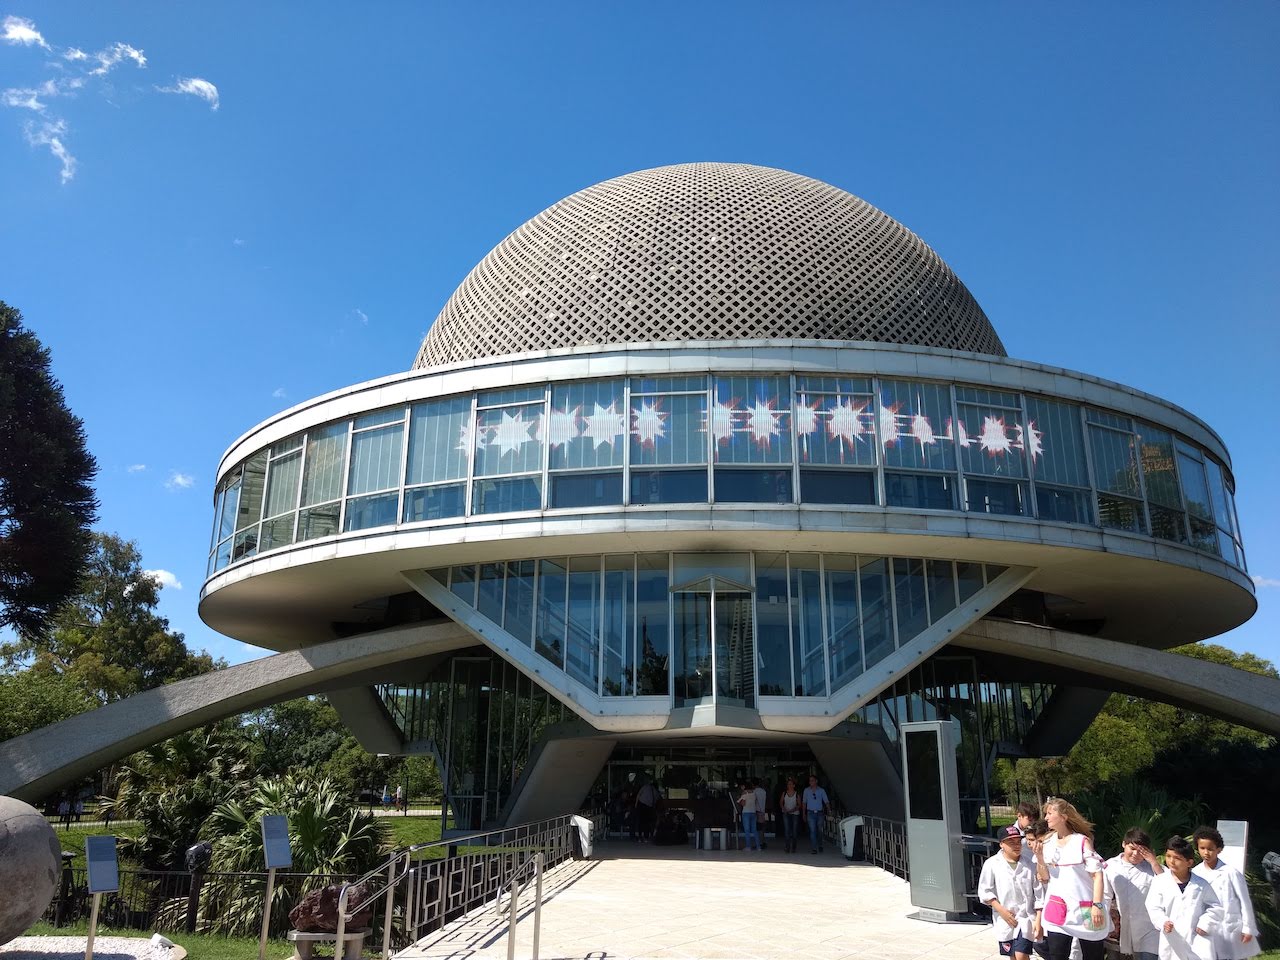 The planetarium of Buenos Aires